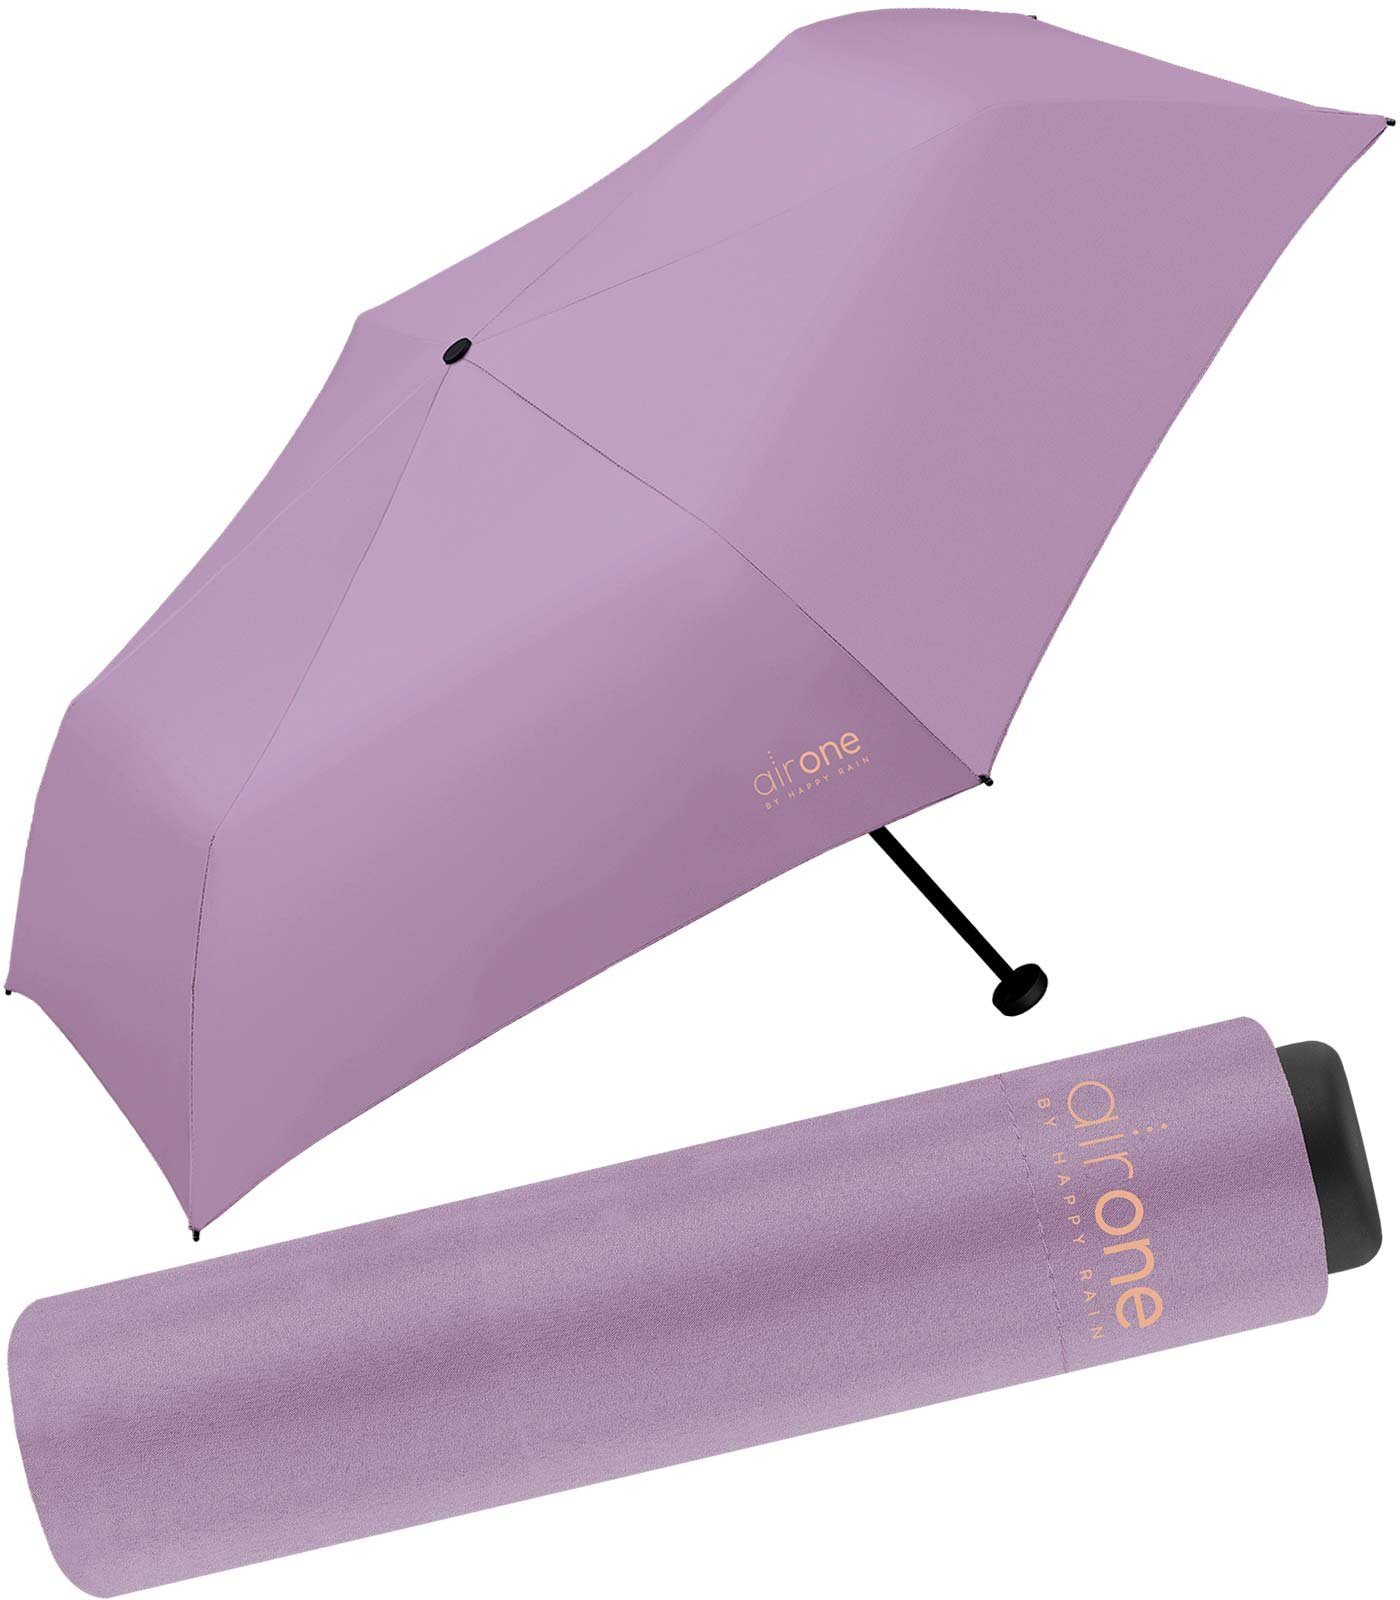 HAPPY RAIN Taschenregenschirm Air One - 99 Gramm Mini-Schirm superleicht, leichtester Minischirm - perfekt für Untewegs lila